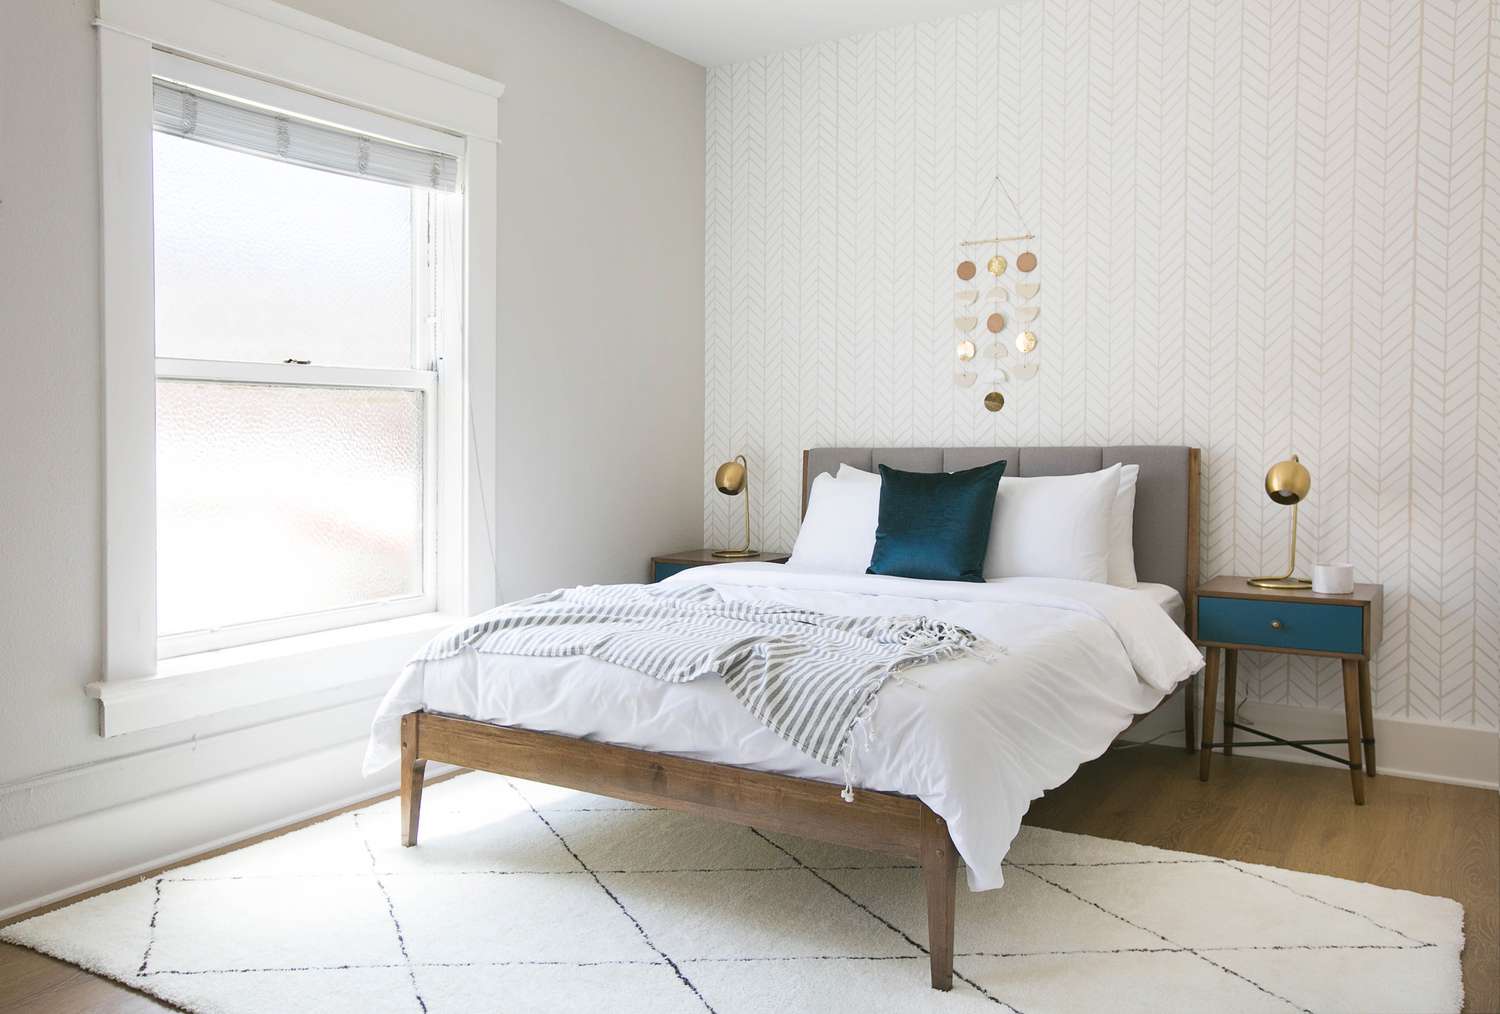 Chambre à coucher grise et blanche avec une touche de couleur aqua. La chambre suit la règle des couleurs 60-30-10